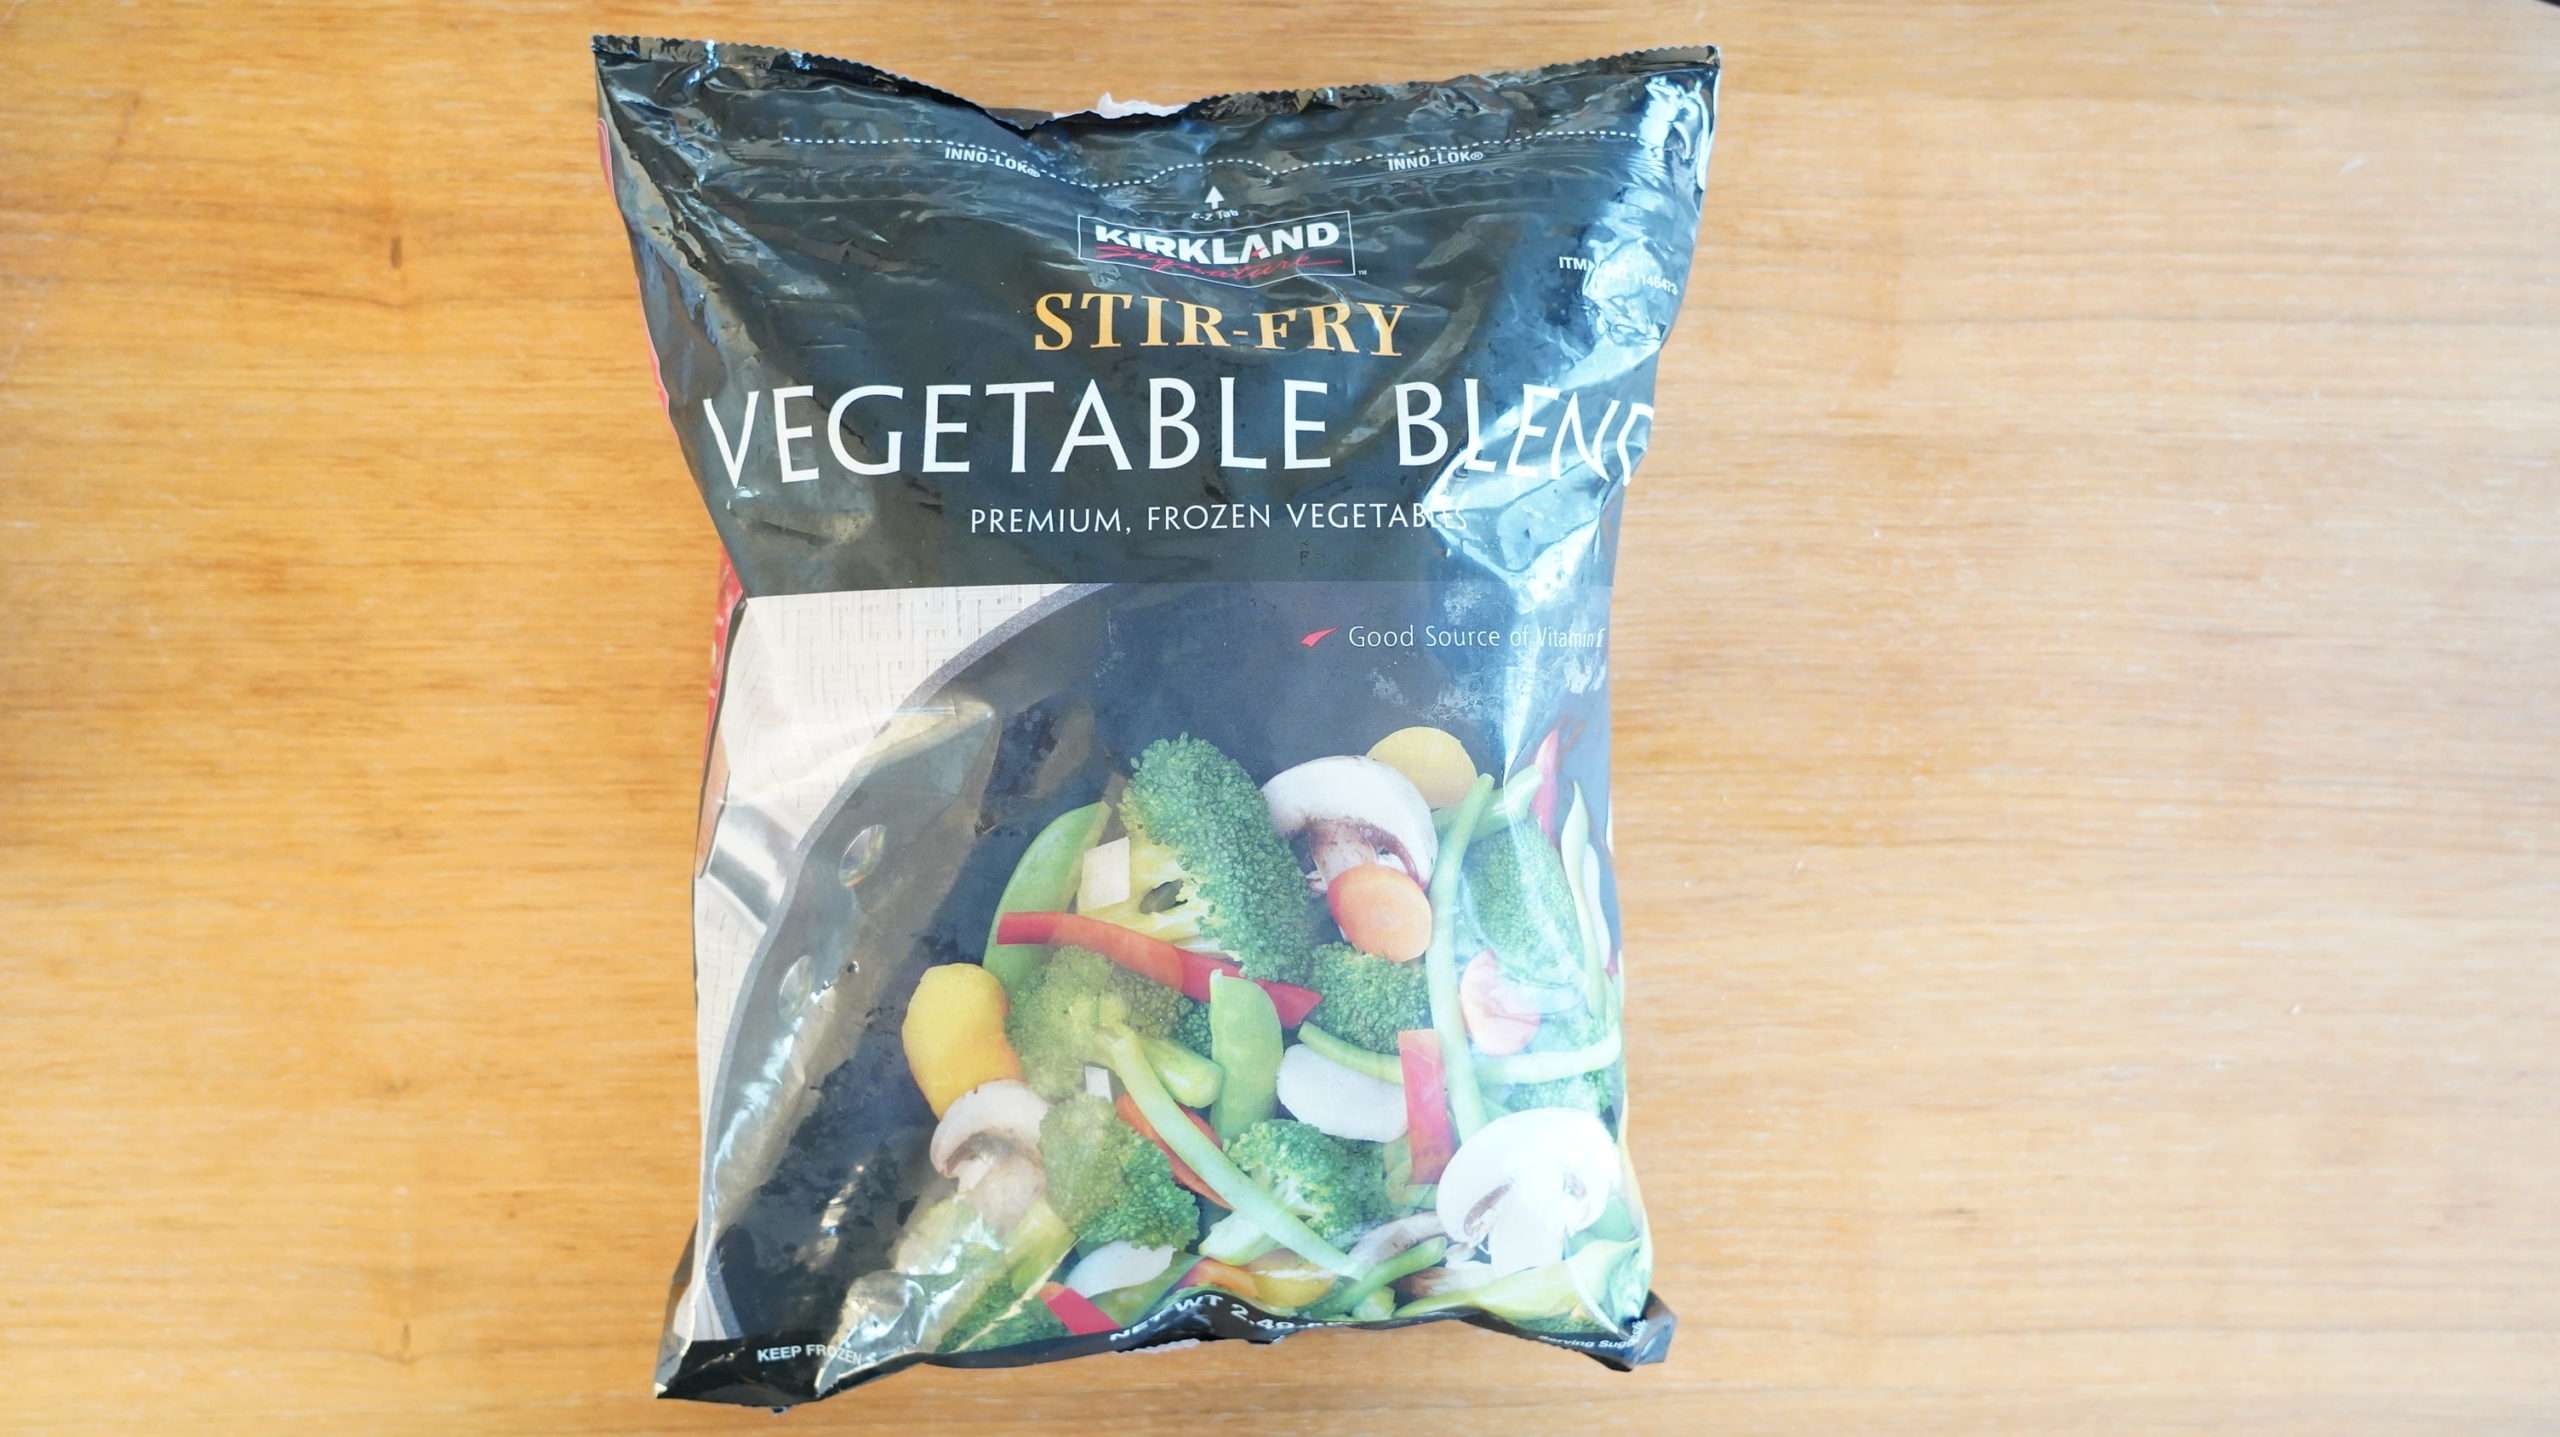 コストコの冷凍食品「ステアフライ・ベジタブルブレンド」のパッケージ写真